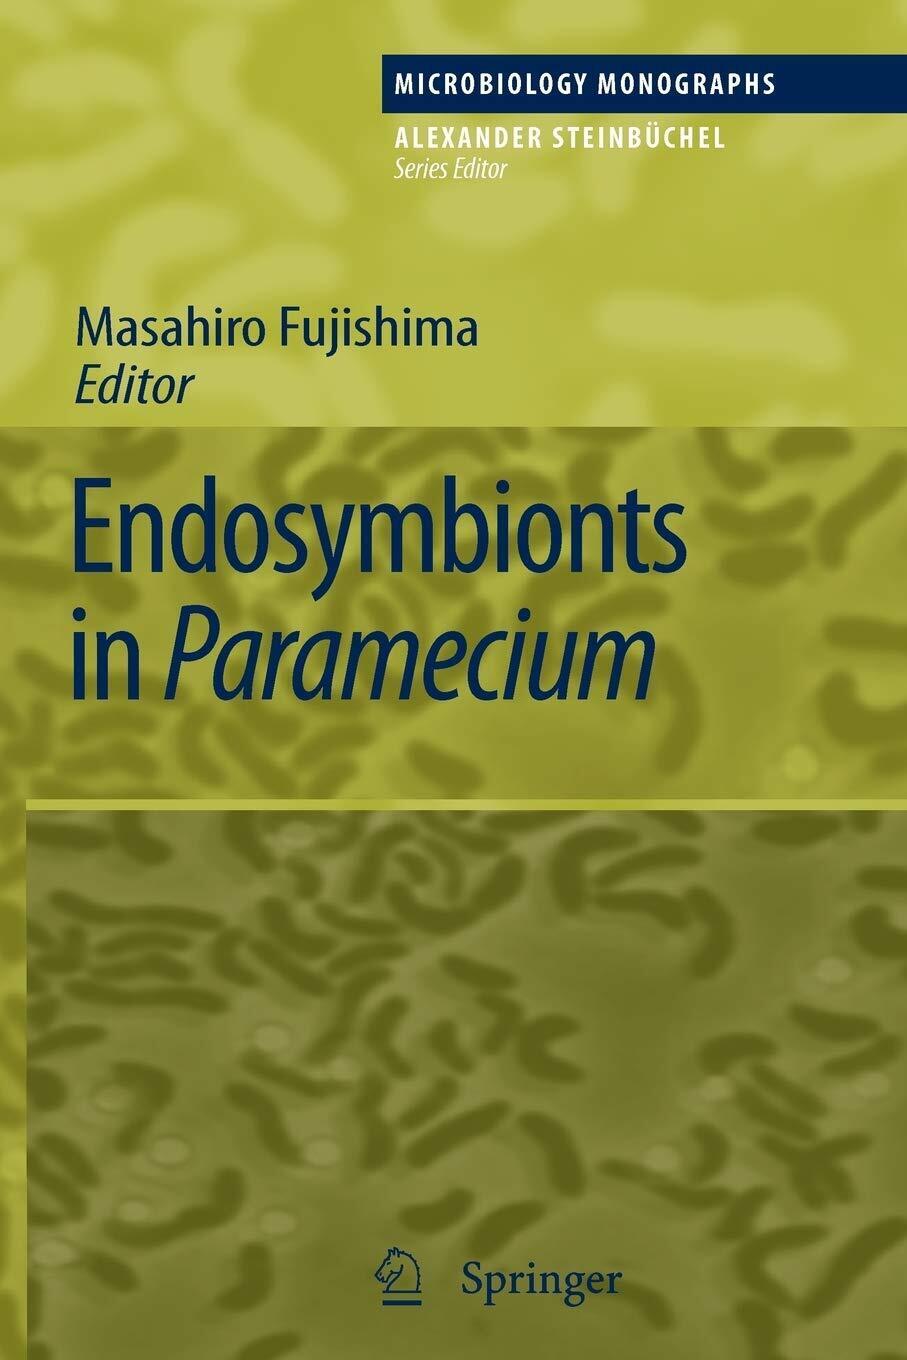 Endosymbionts in Paramecium - Masahiro Fujishima - Springer, 2010